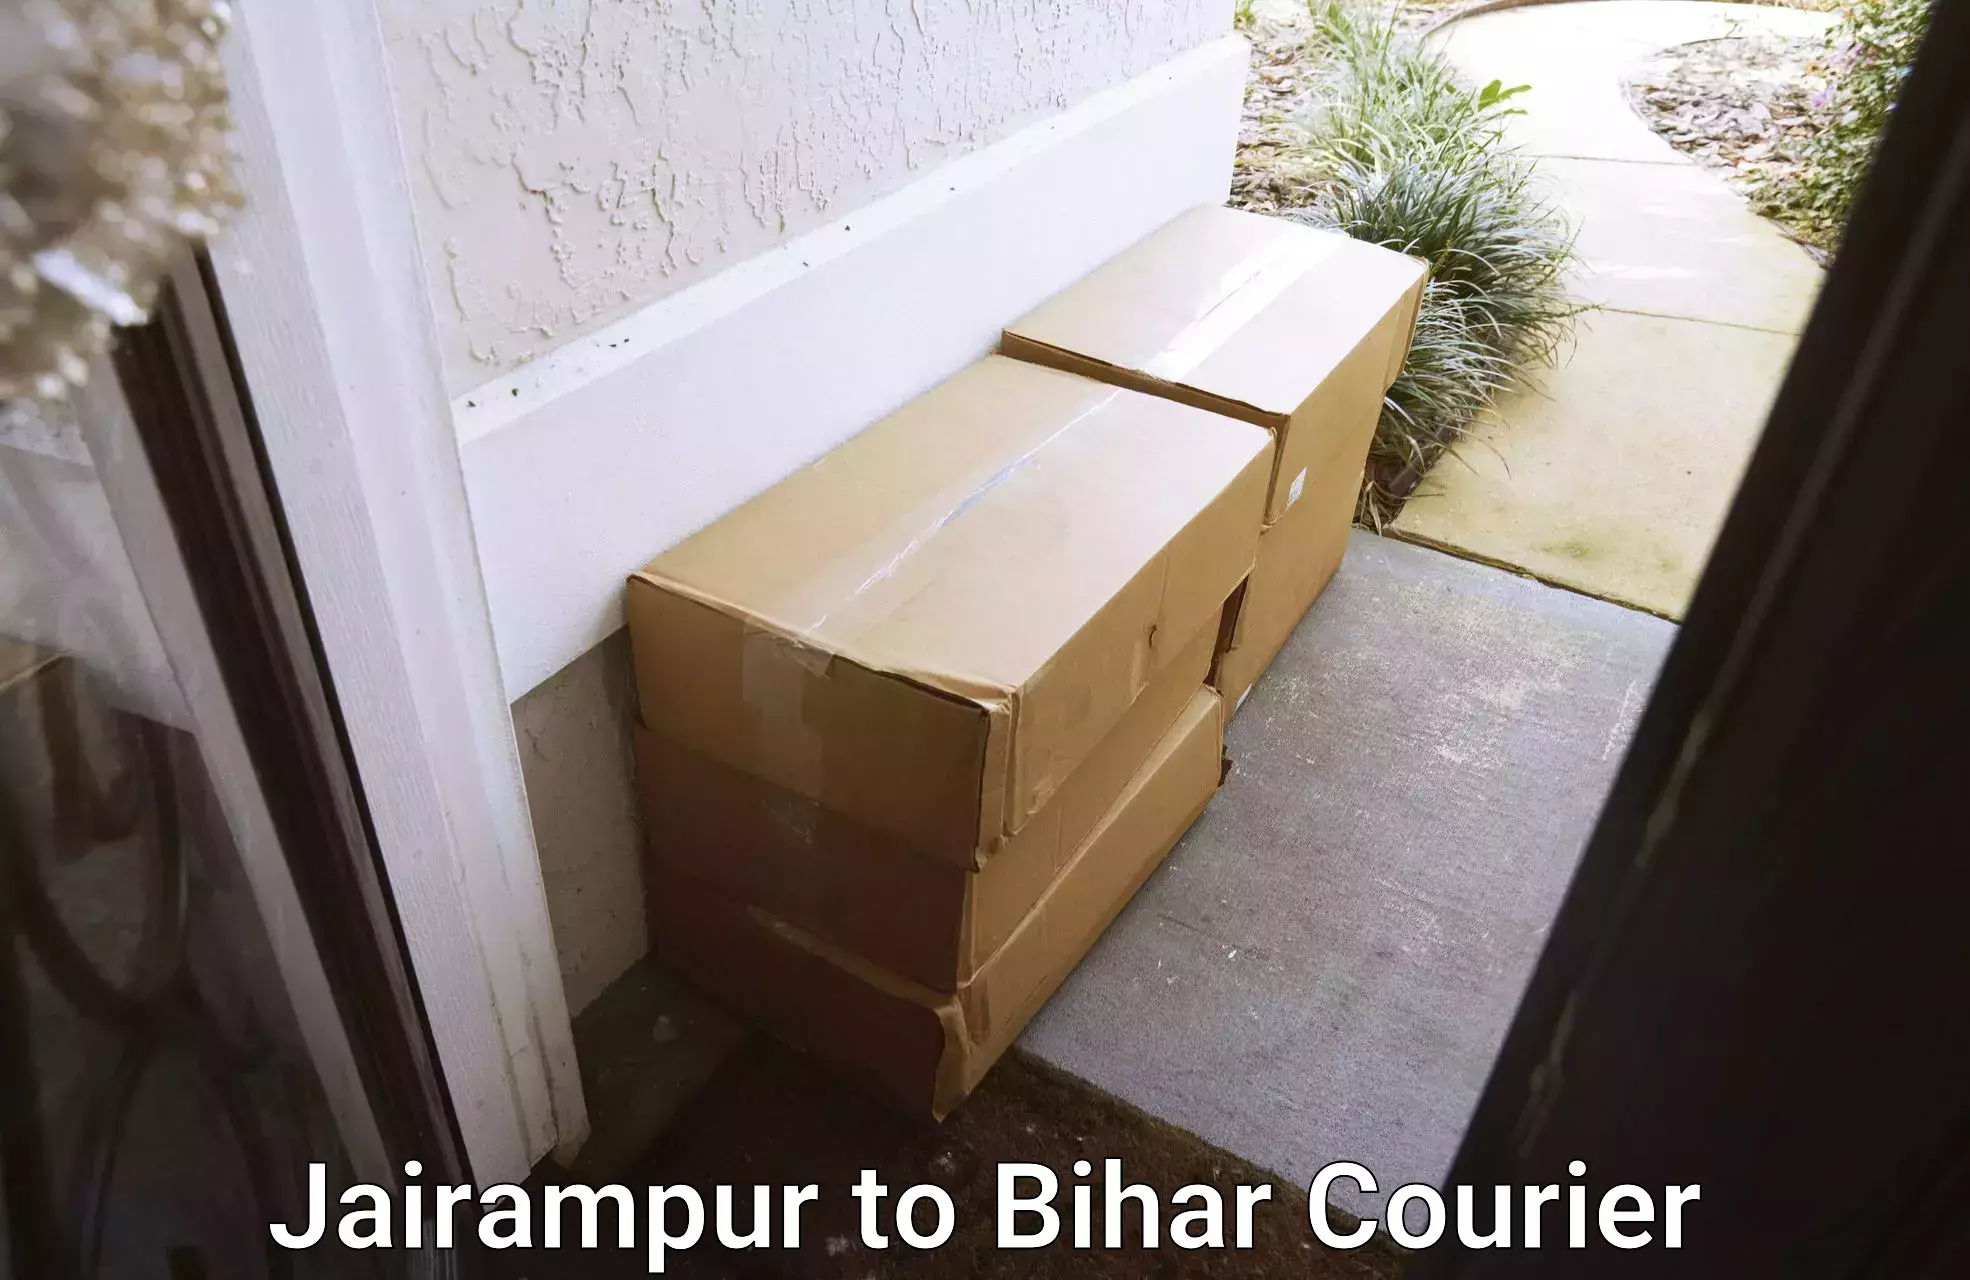 Overnight delivery services Jairampur to Manihari